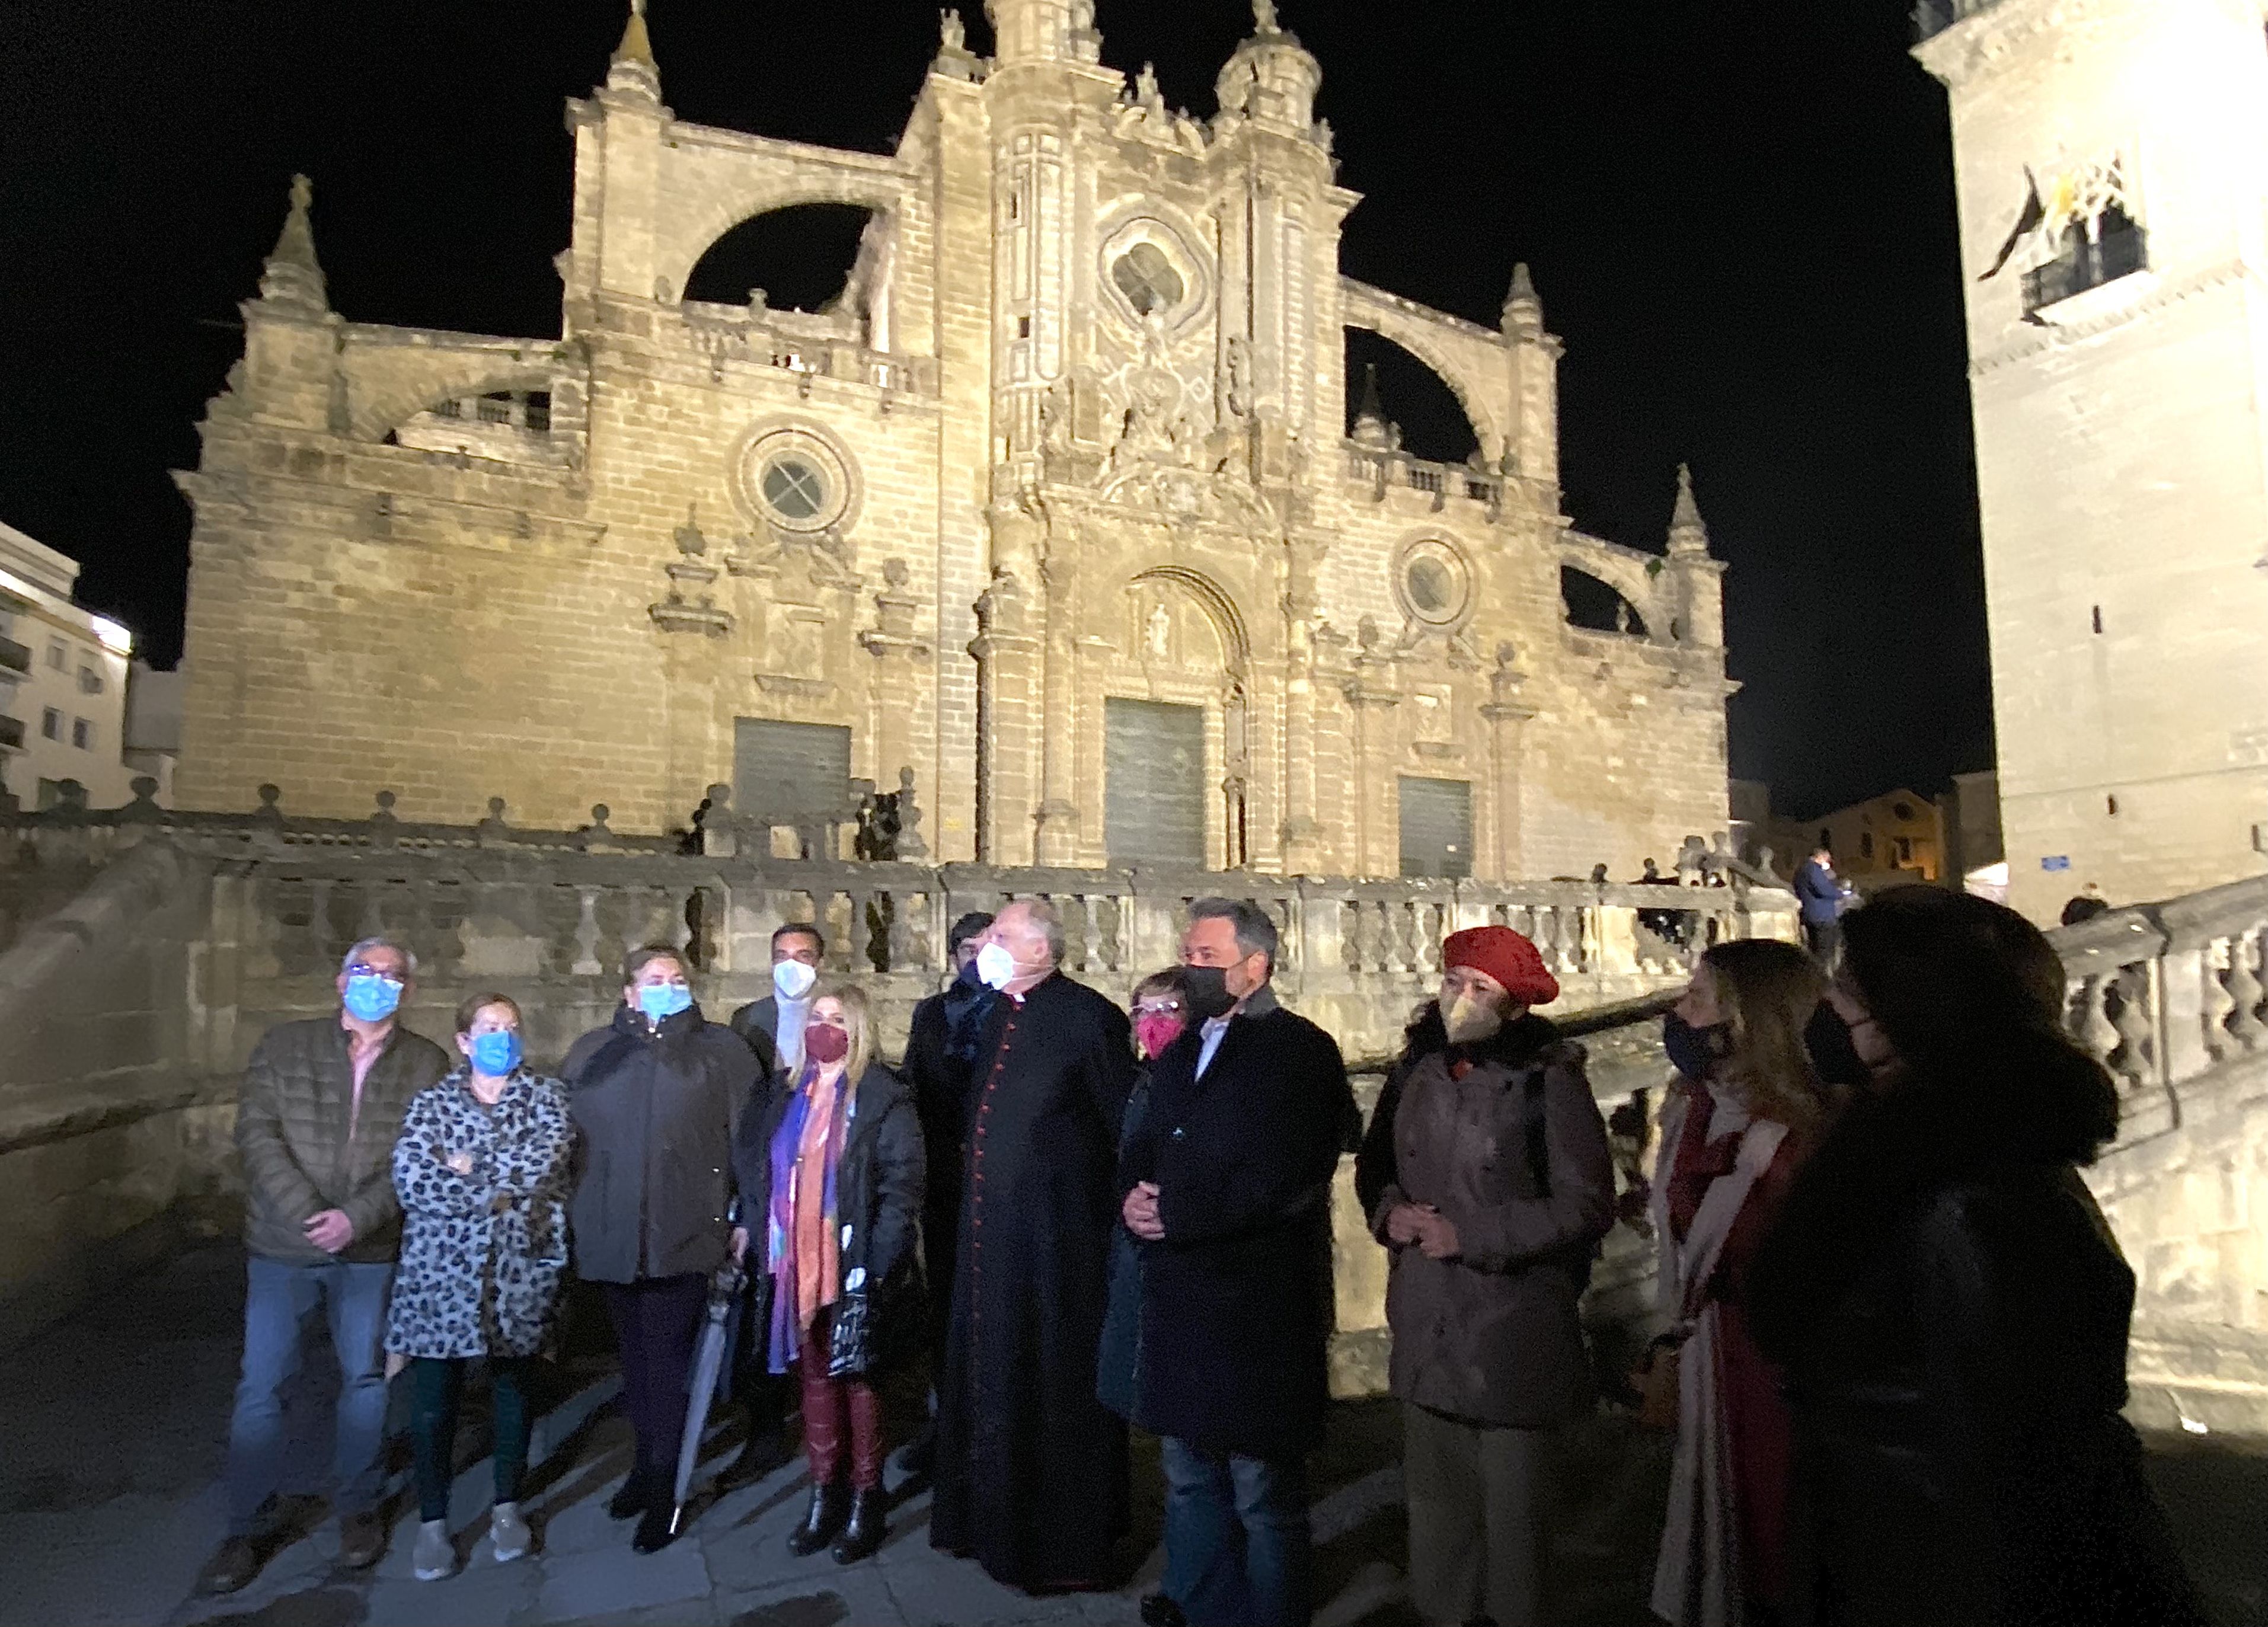 Bertemati y la Catedral estrenan iluminación singular. La alcaldesa, delegados y el canónigo Diego Moreno posando tras el encendido.